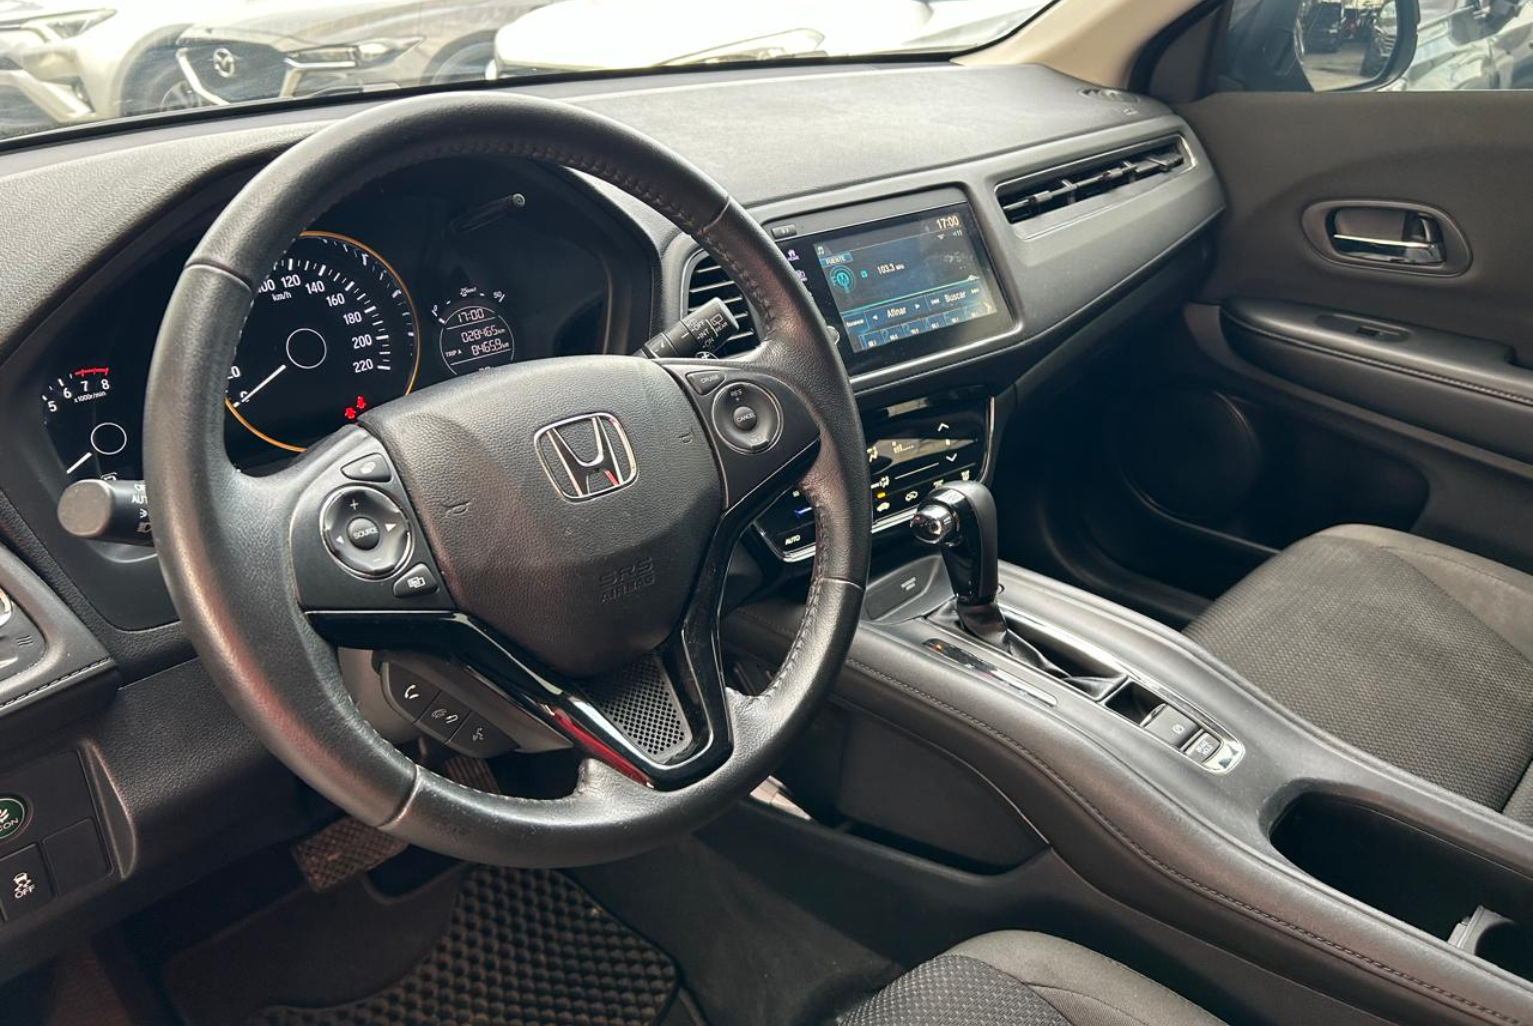 Honda HR-V 2021 Automático color Gris, Imagen #6